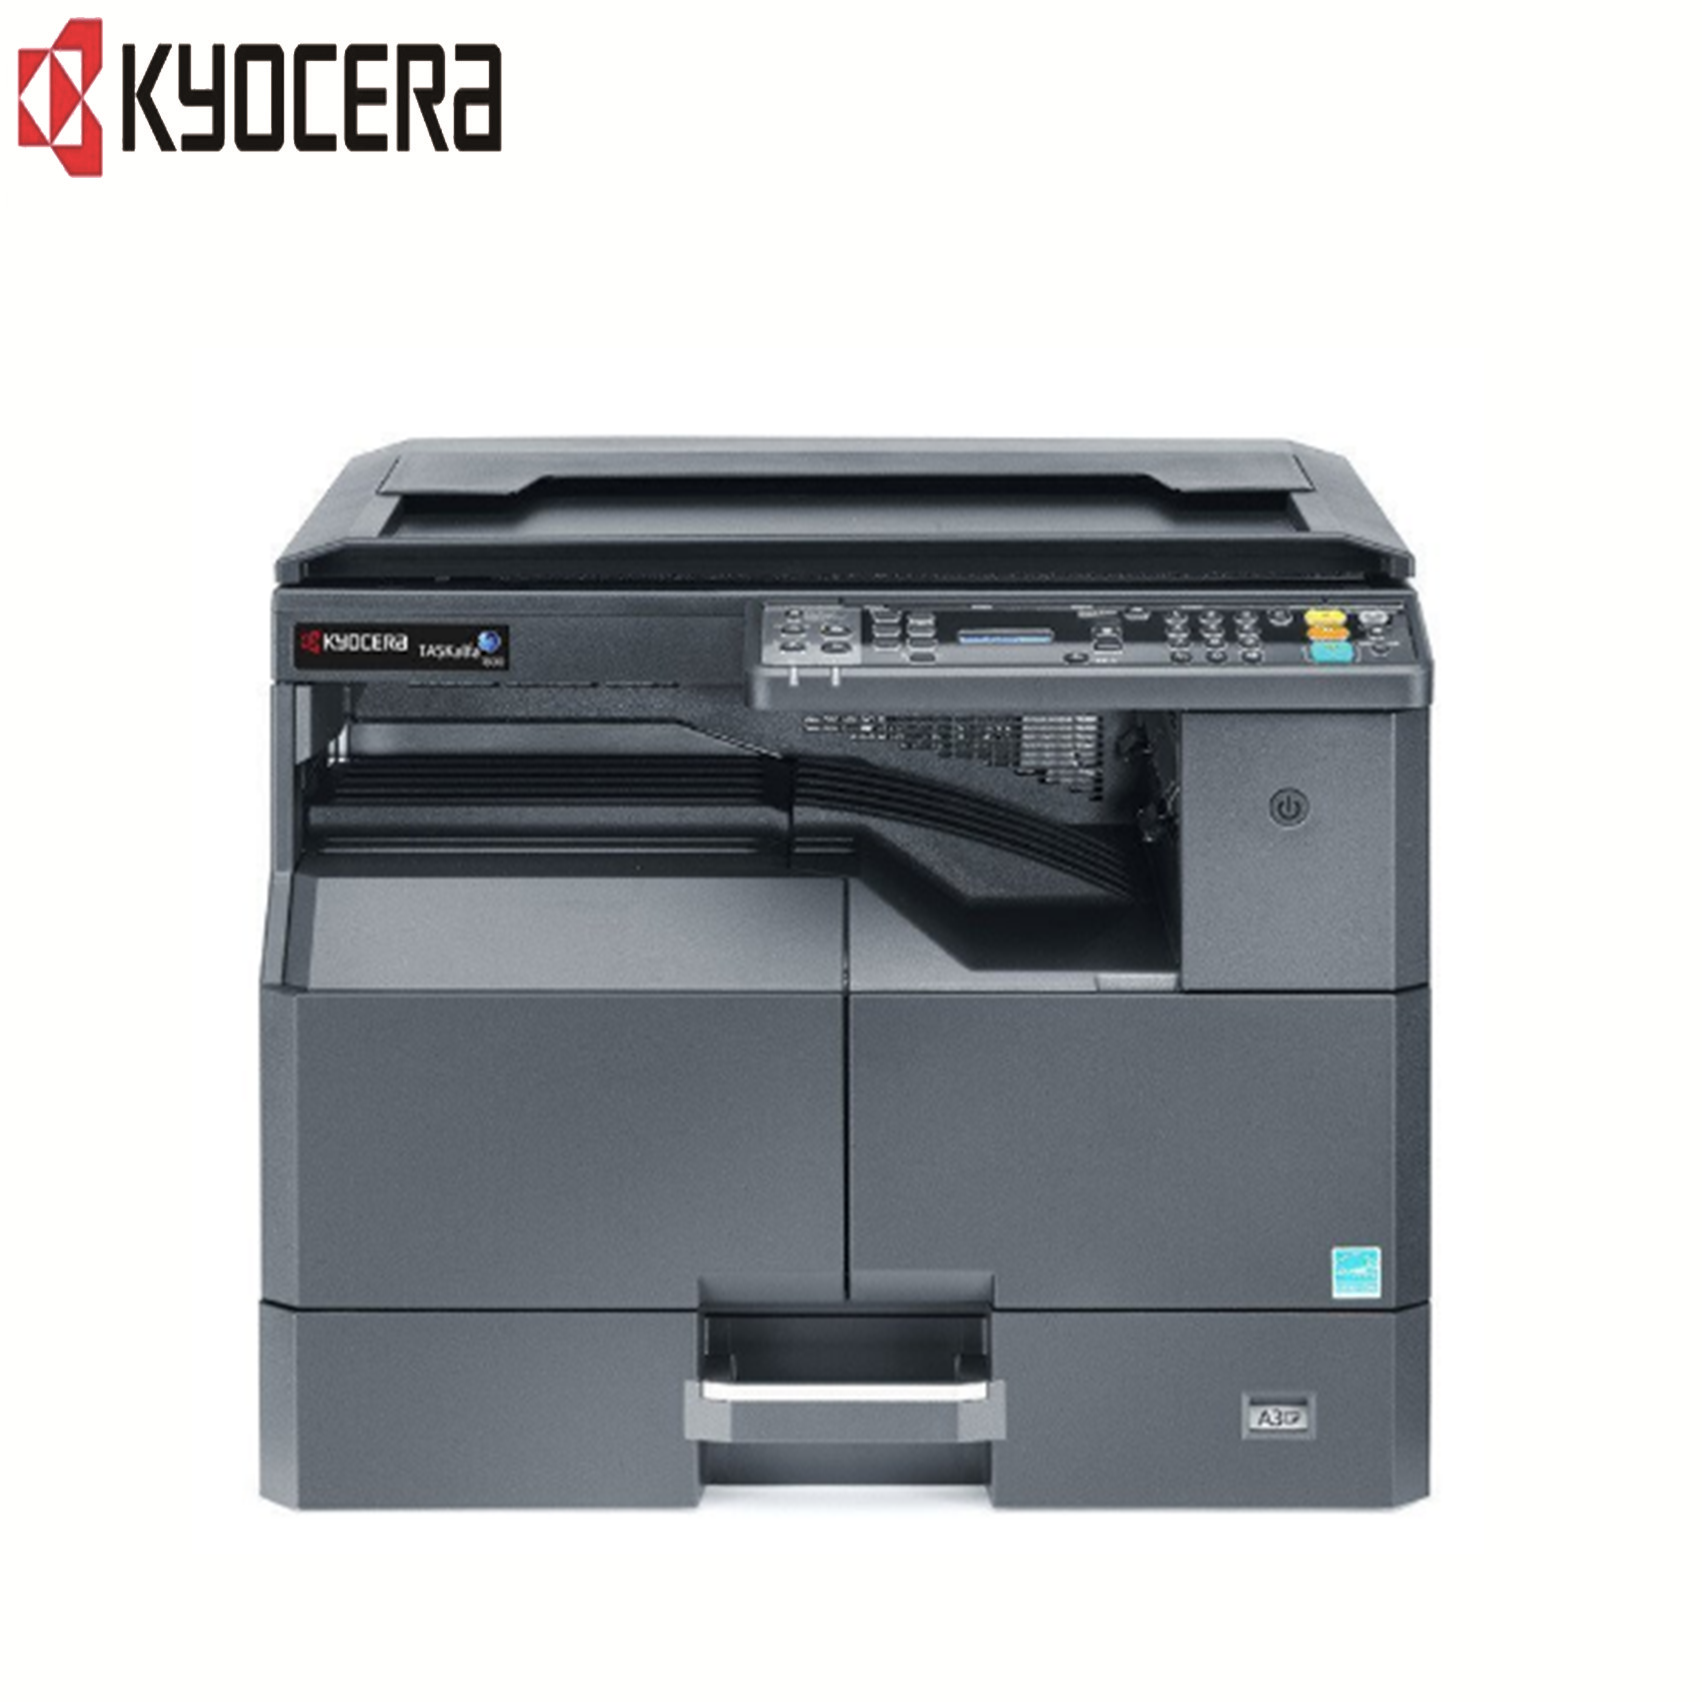 京瓷(KYOCERA)2010 黑白多功能复合机 打印/复印/扫描